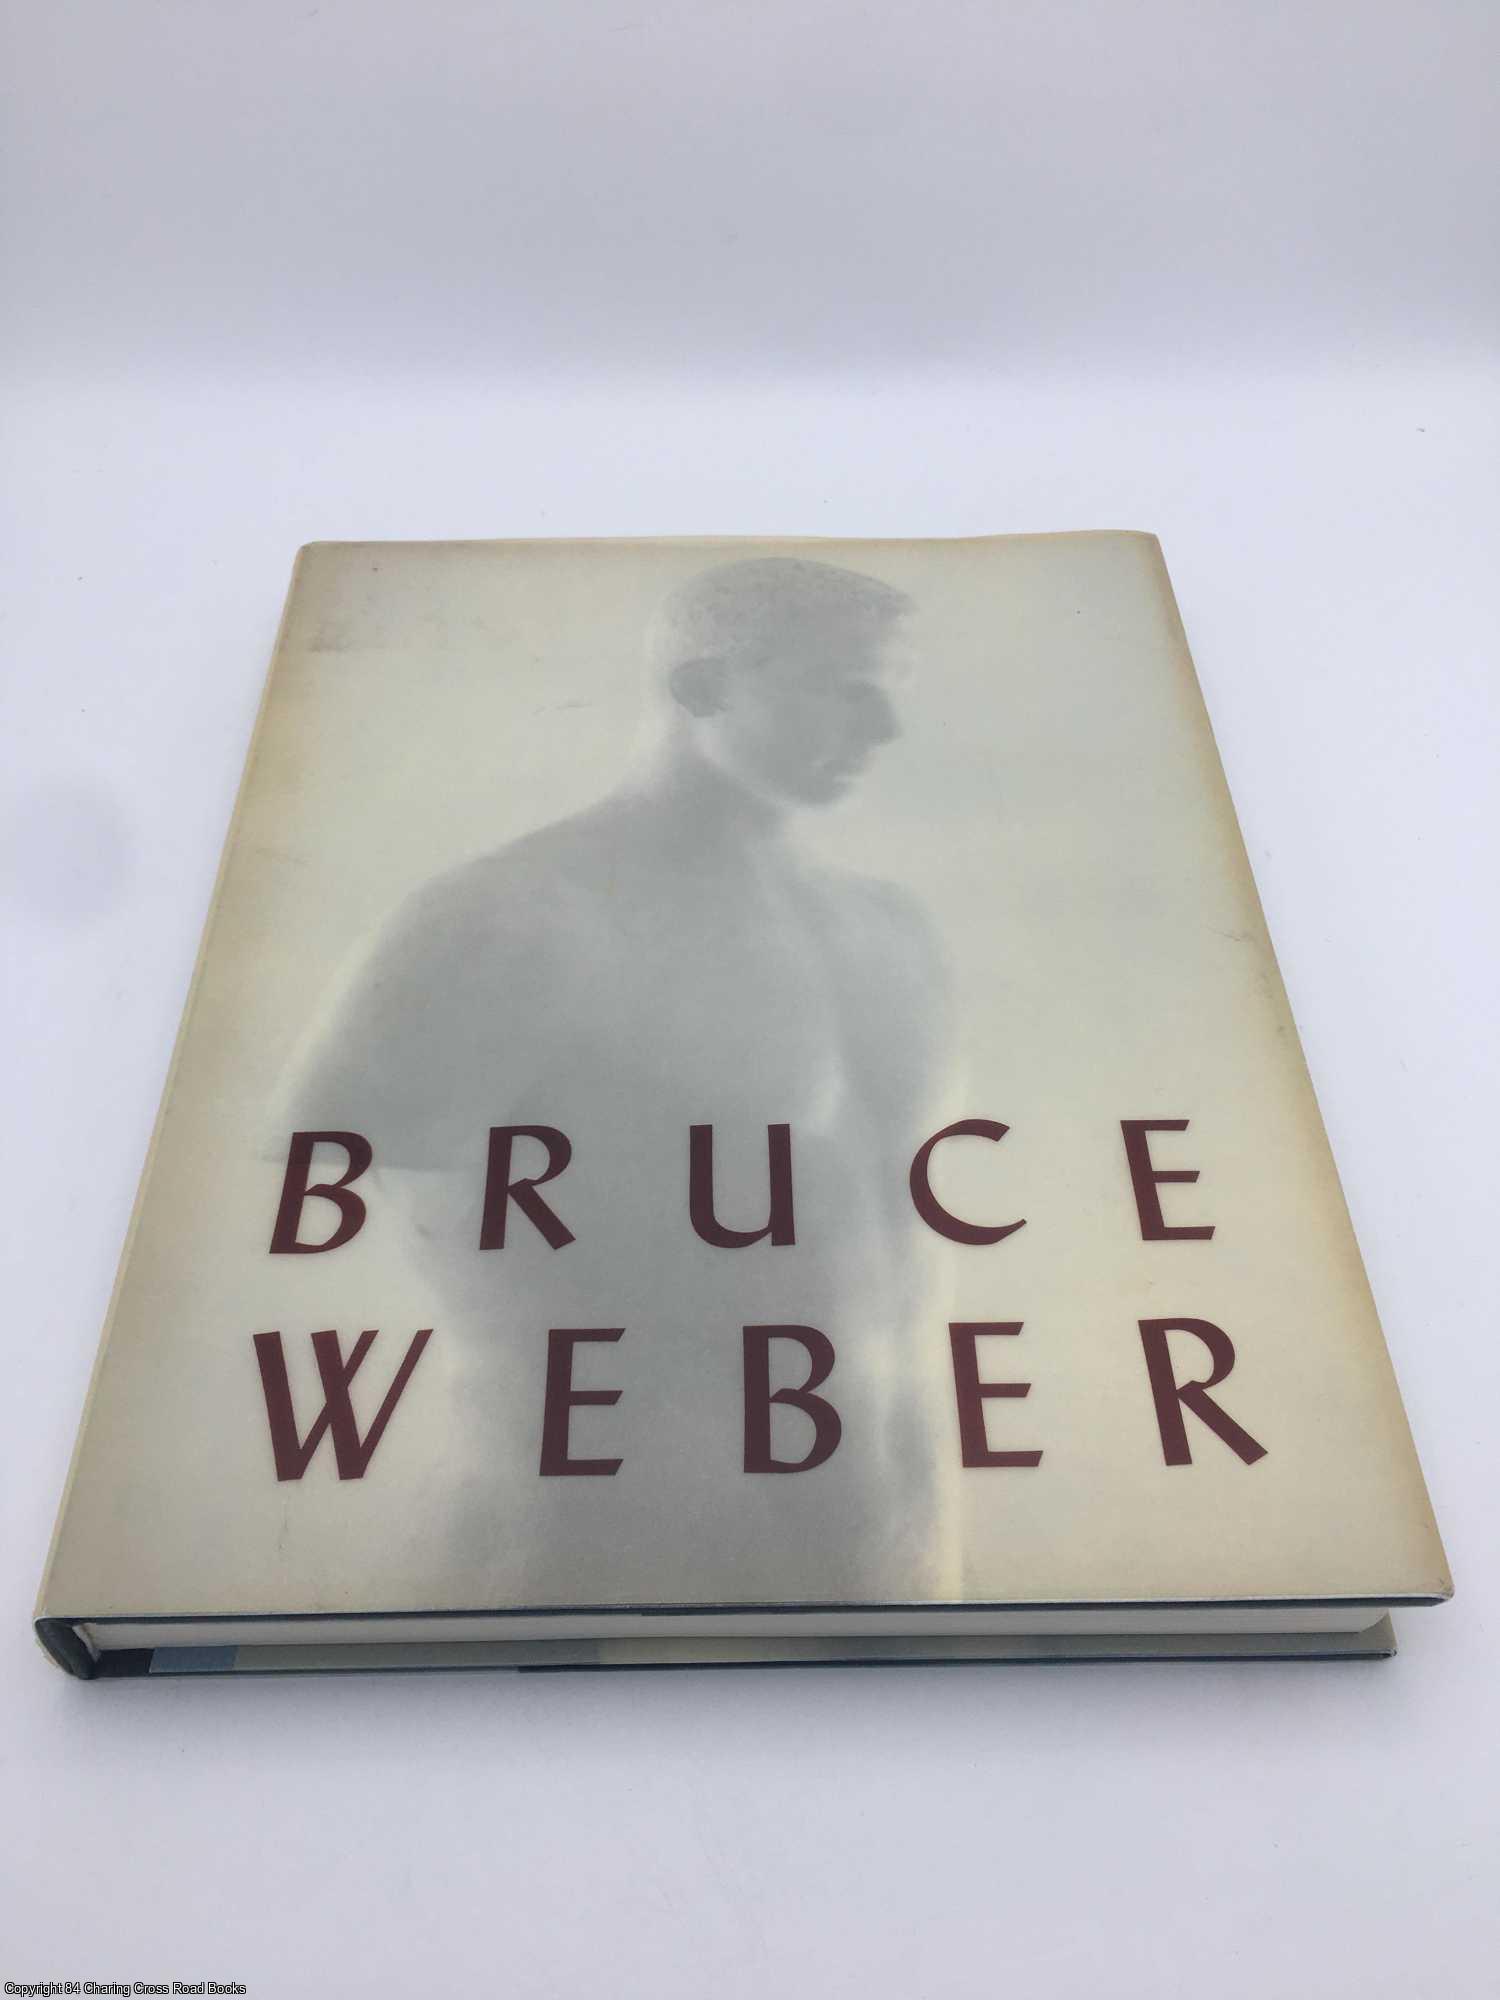 Bruce Weber by Bruce Weber on 84 Charing Cross Rare Books